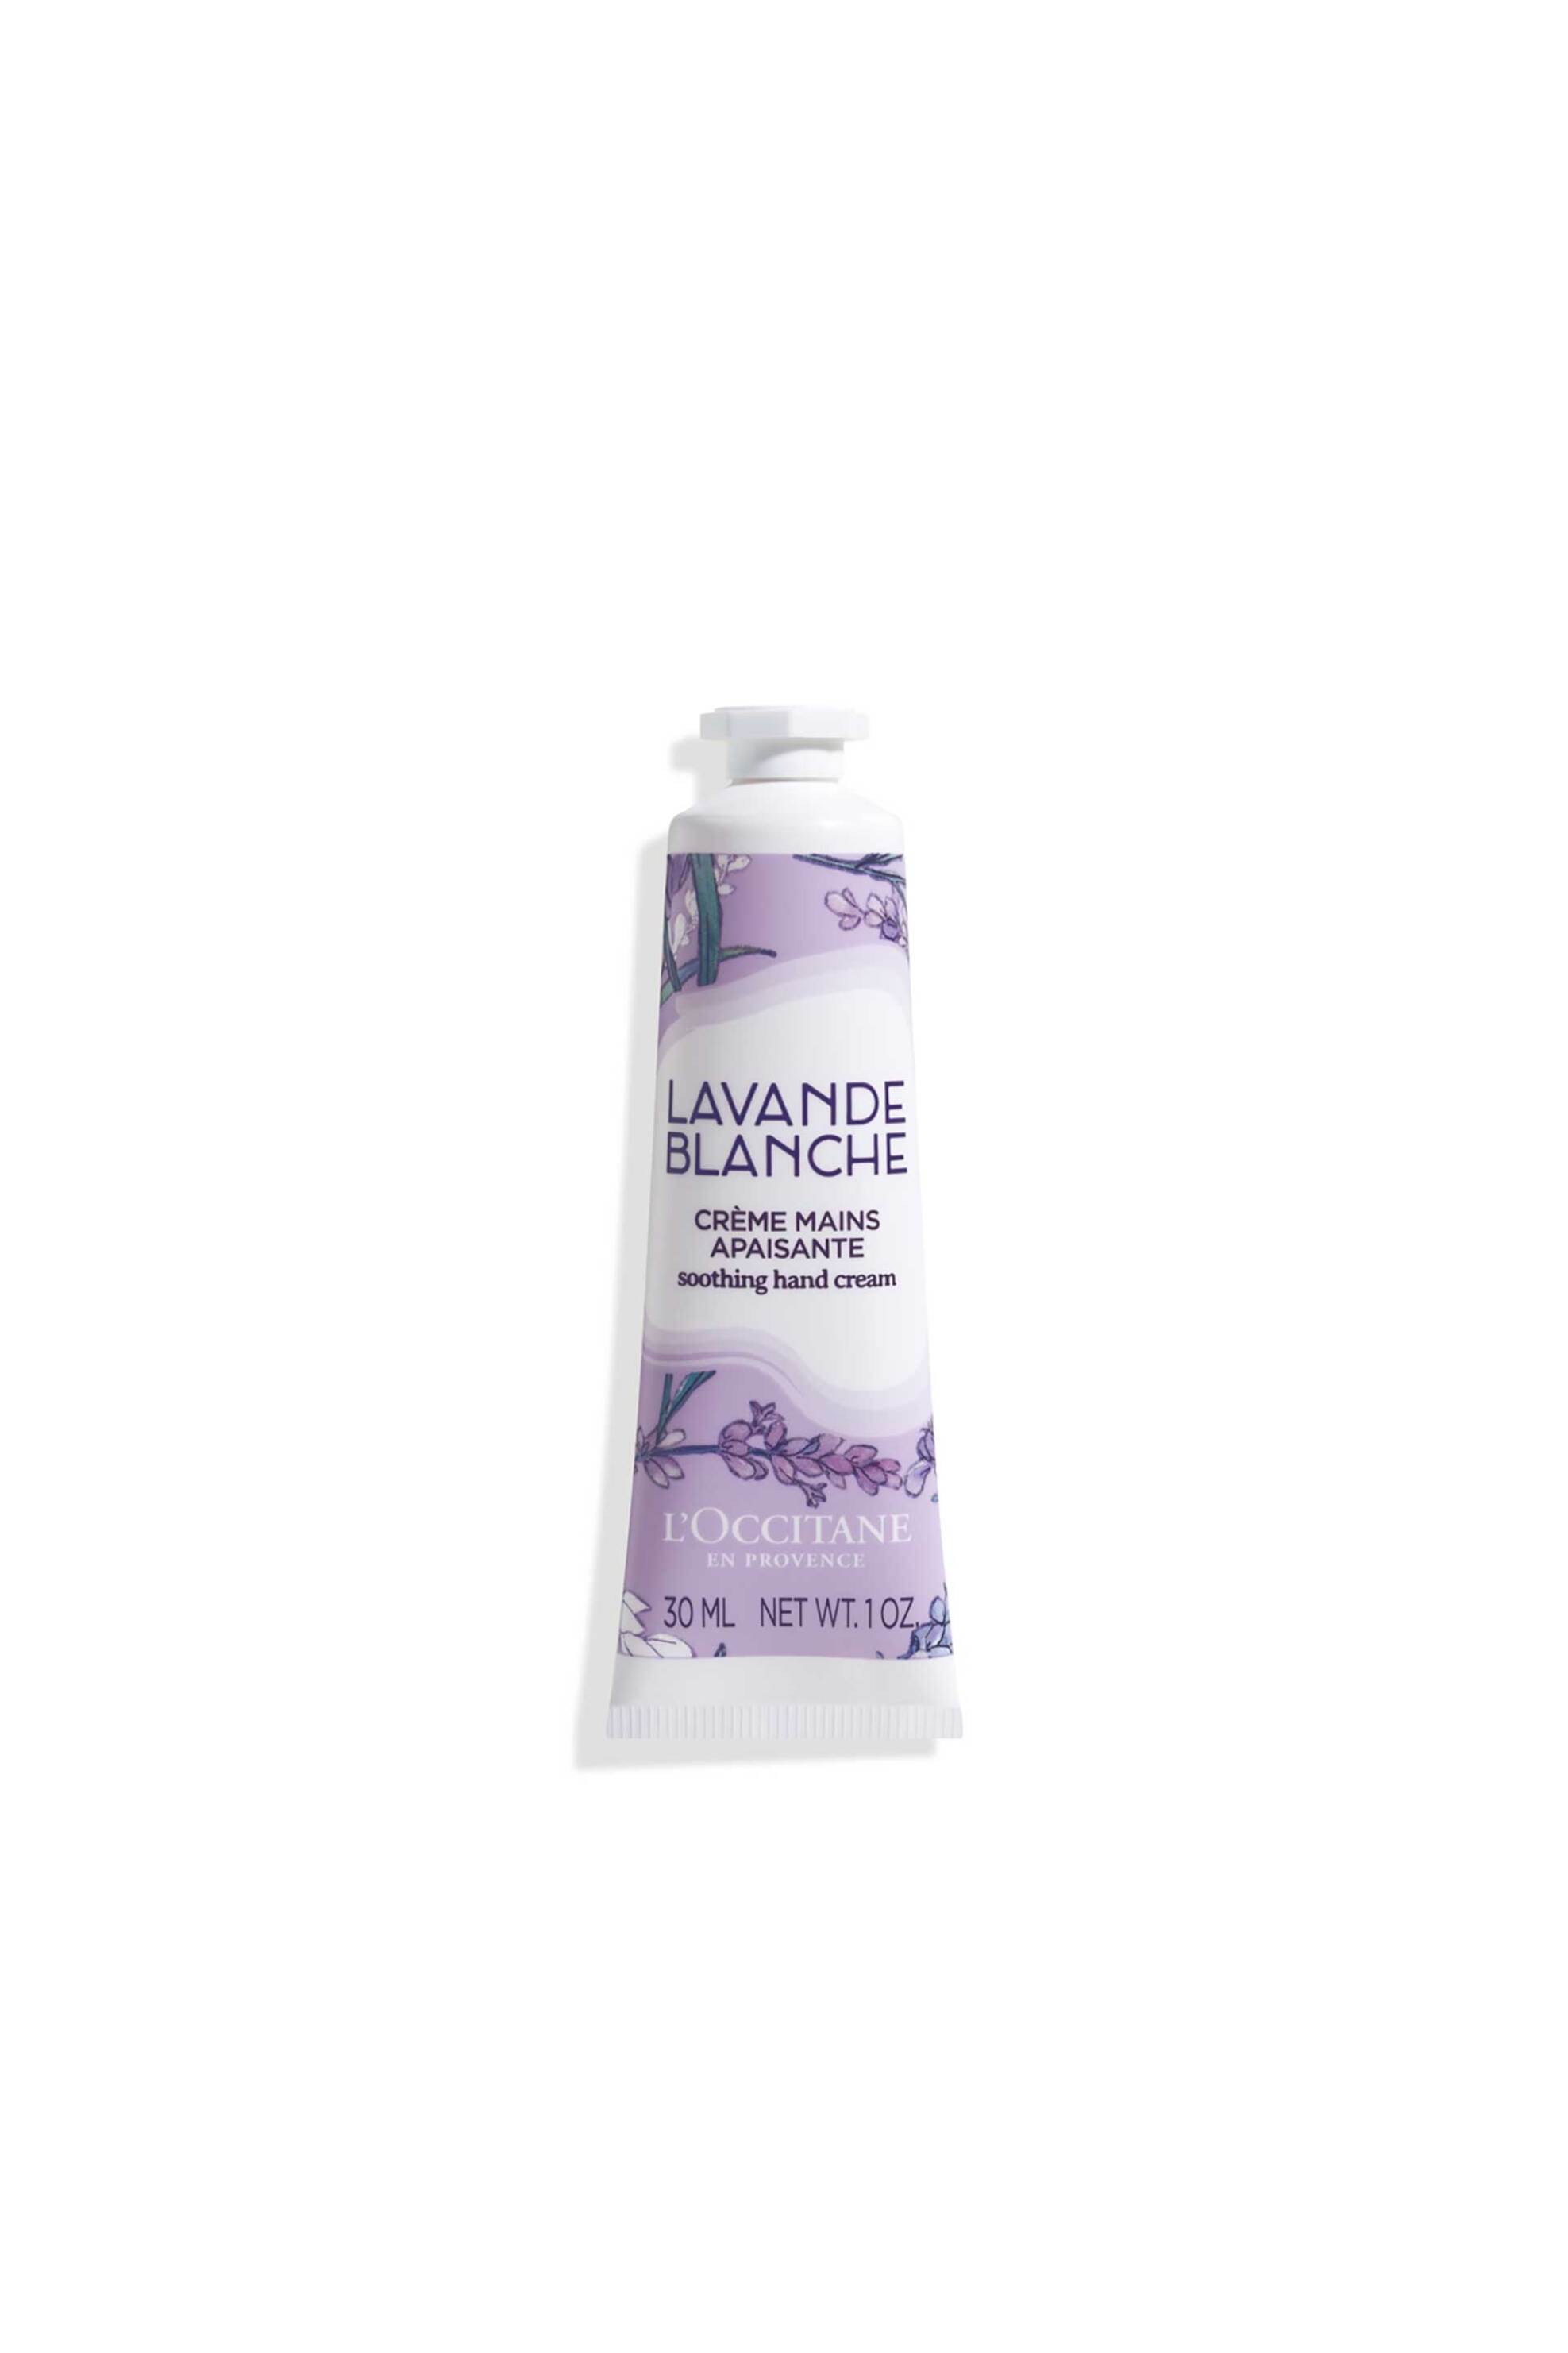 Προϊόντα Ομορφιάς > Περιποίηση Σώματος > Ενυδάτωση & Περιποίηση Χεριών > Κρέμες Χεριών L'Occitane White Lavender Hand Cream 30 ml - 5110703